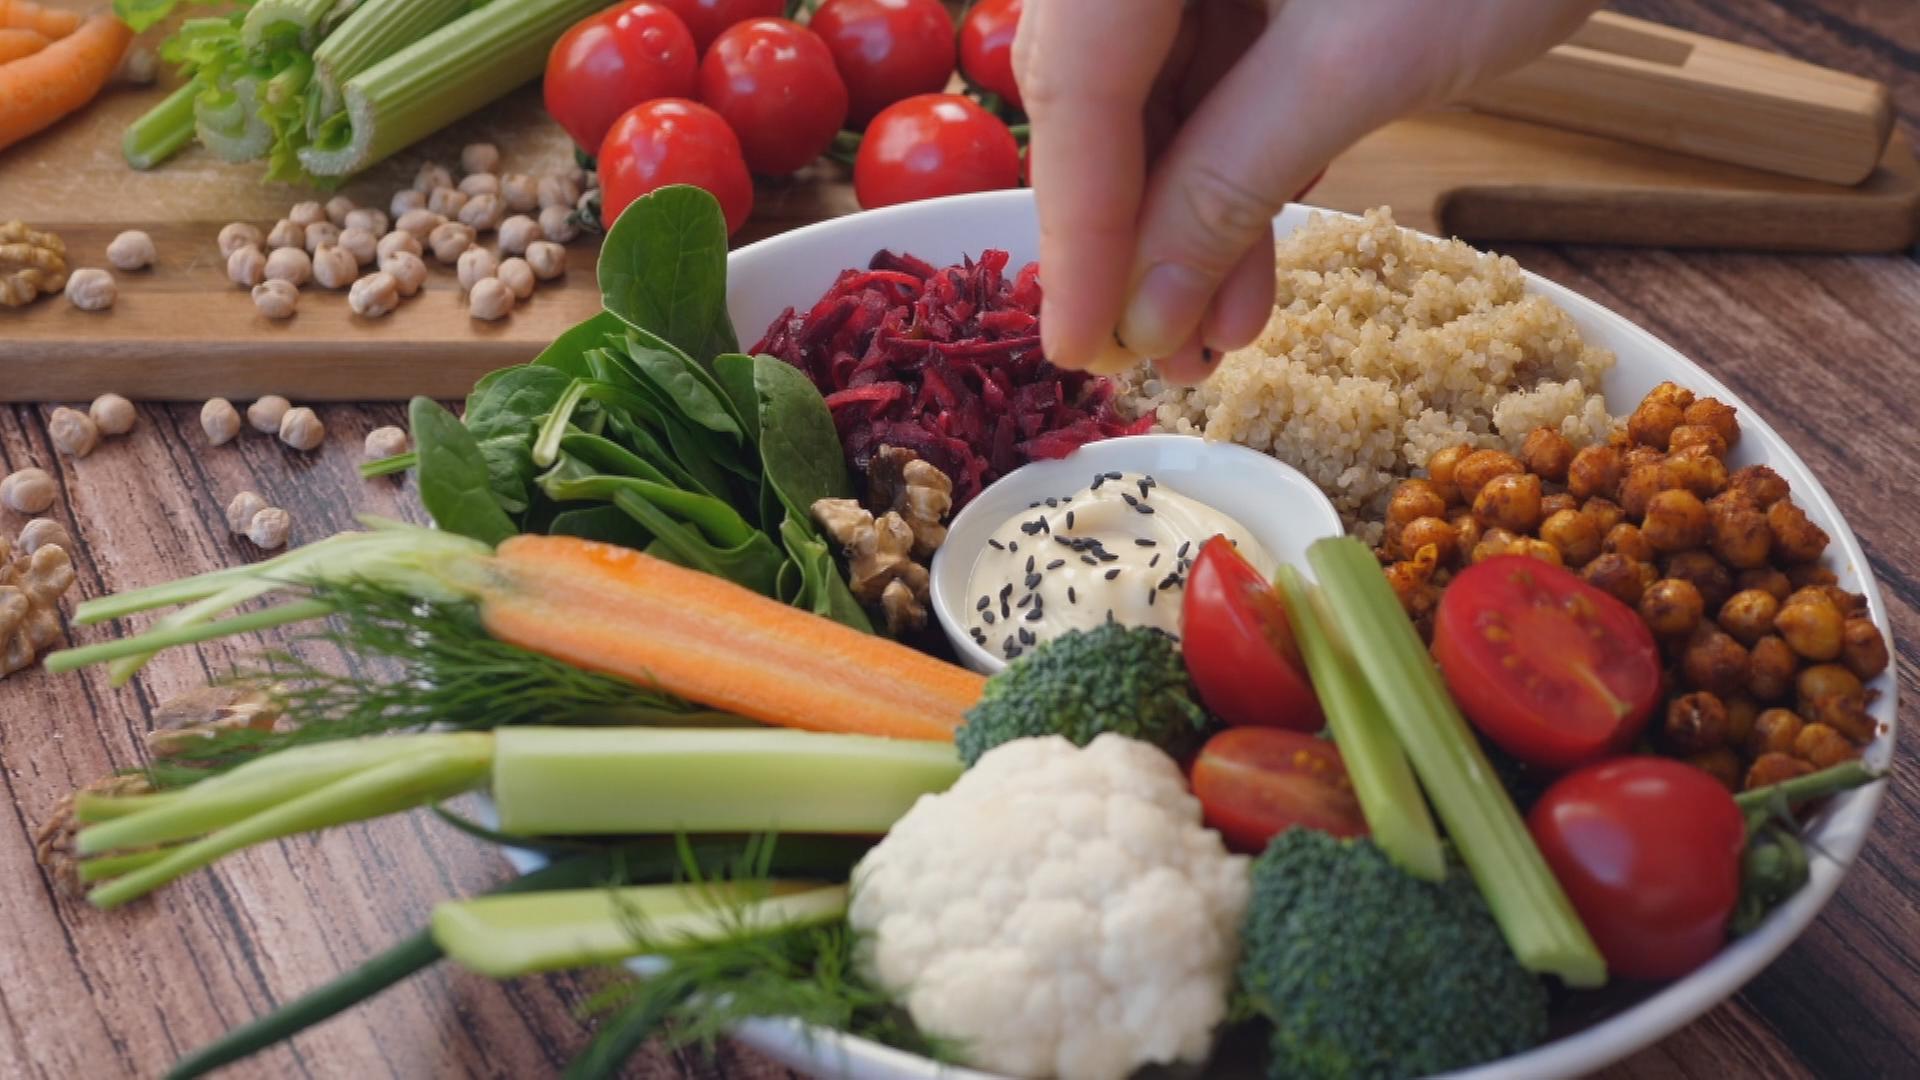 Ein Teller mit Blumenkohl, Broccoli, Sellerie, Möhren, Spinat, Rotkohl, Quinoa, Kichererbsen, Tomaten und einem Dipp: von oben greift eine Hand zu.